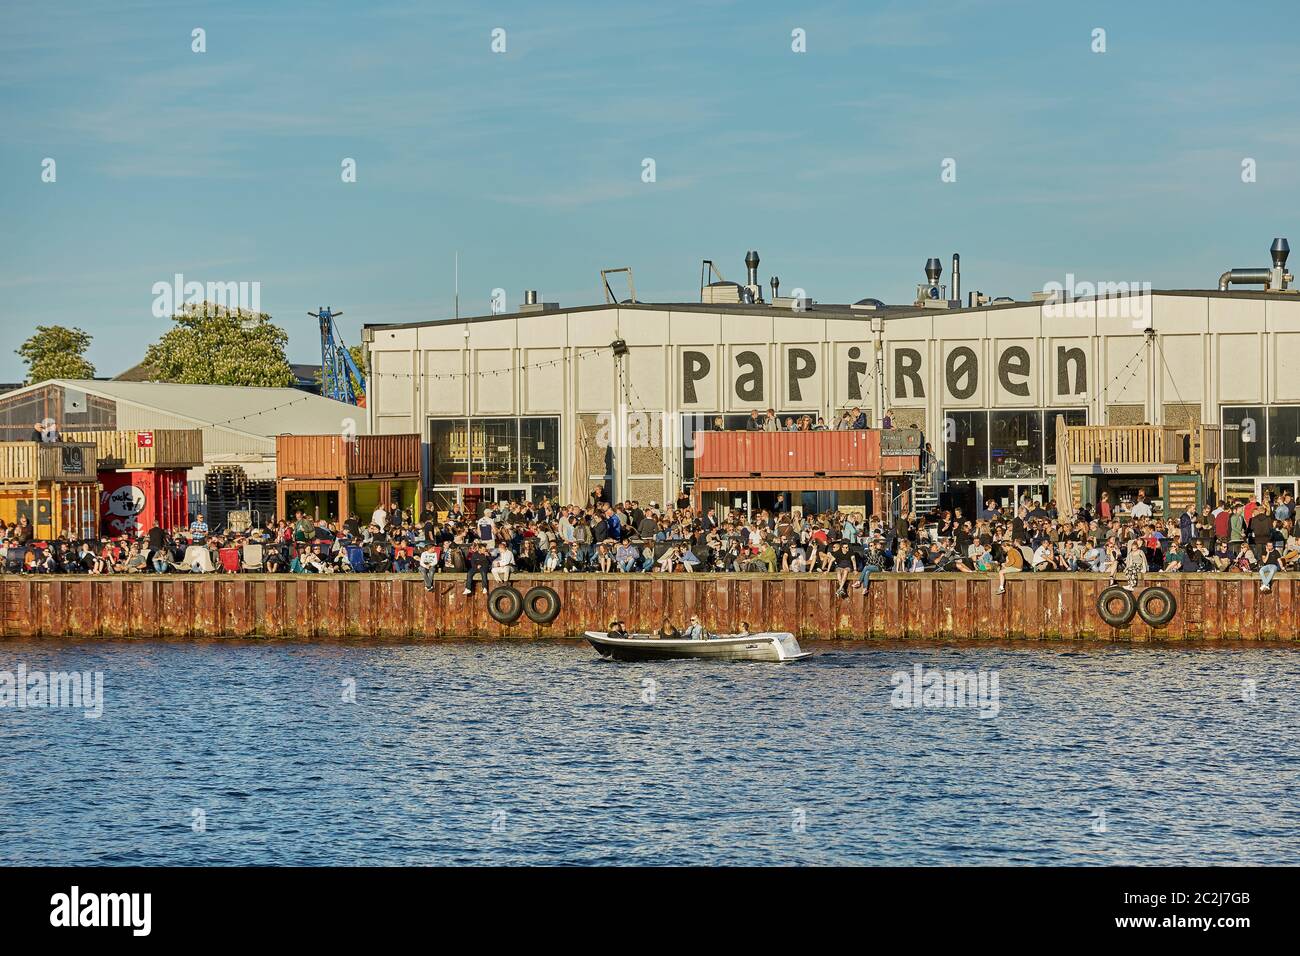 Mercato alimentare di strada Papiroen sull'isola della carta a Copenhagen  con un sacco di persone sulla banchina Foto stock - Alamy